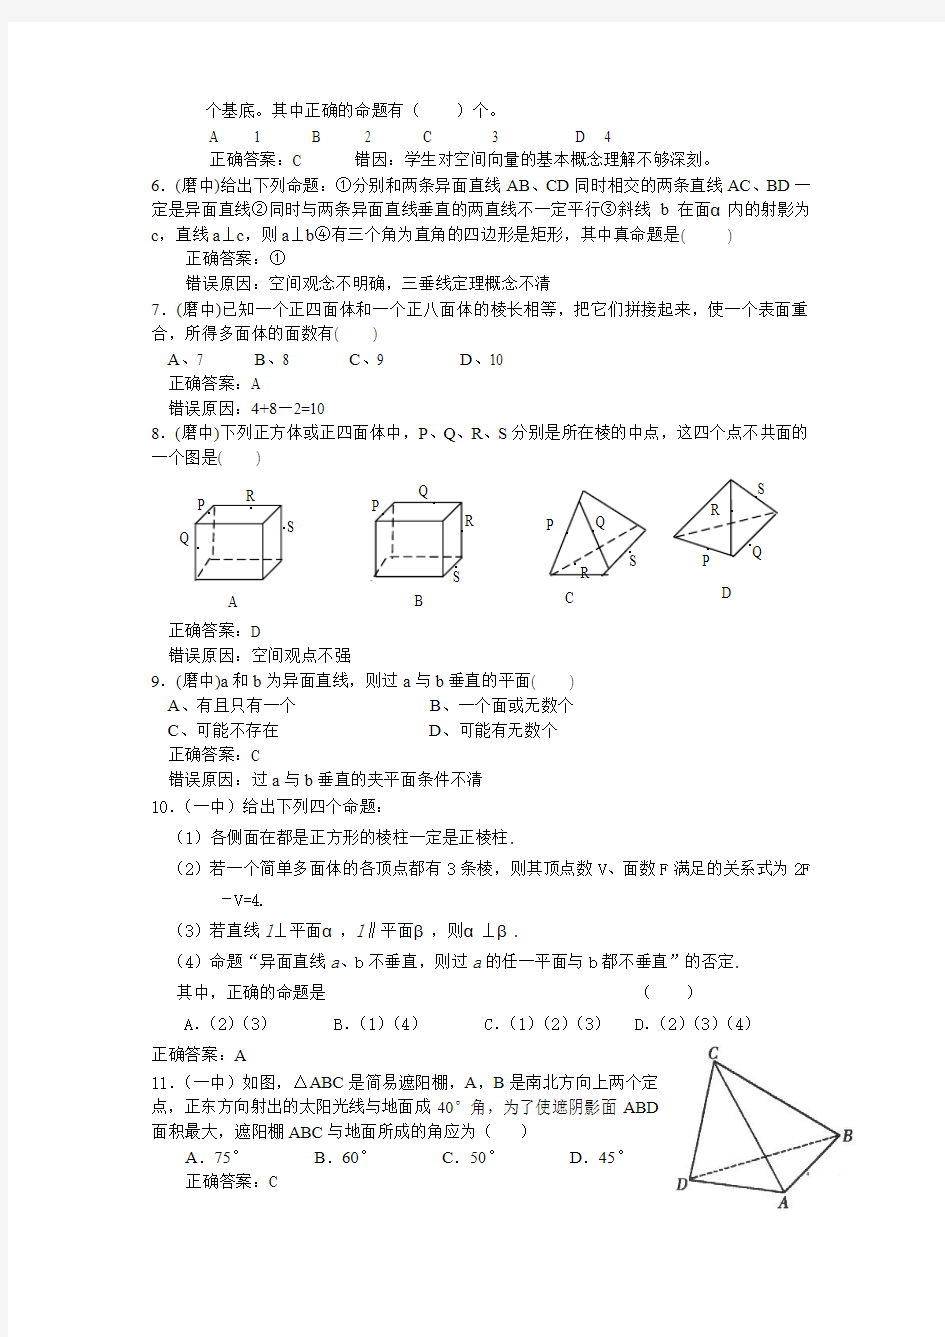 立体几何易错题集6(如皋教研室编)